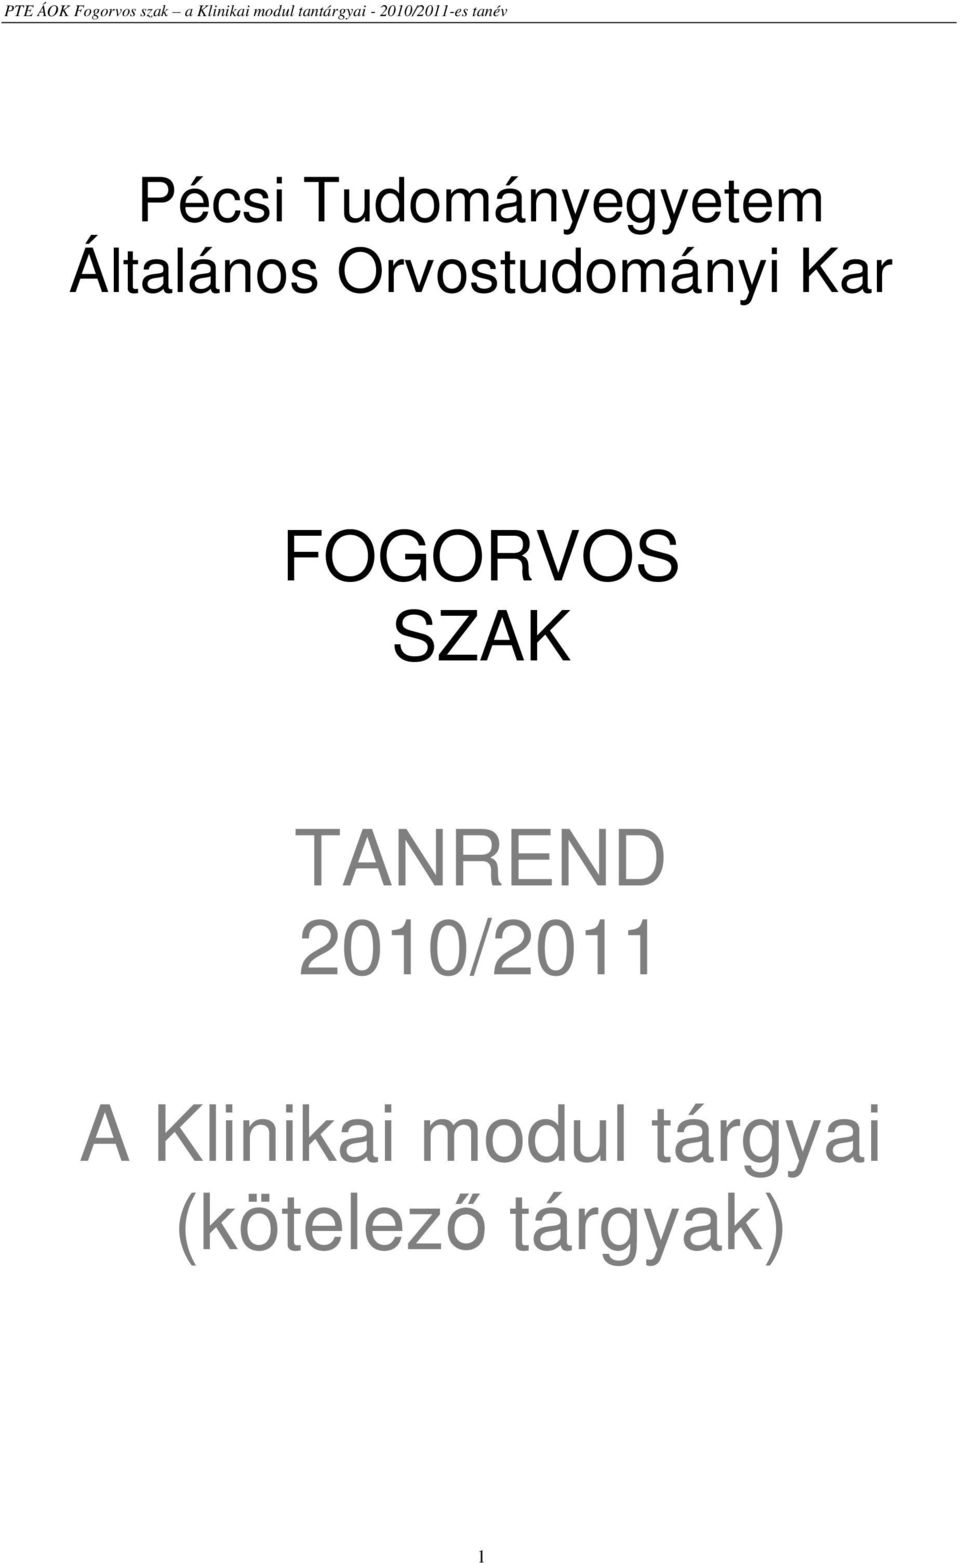 SZAK TANREND 2010/2011 A